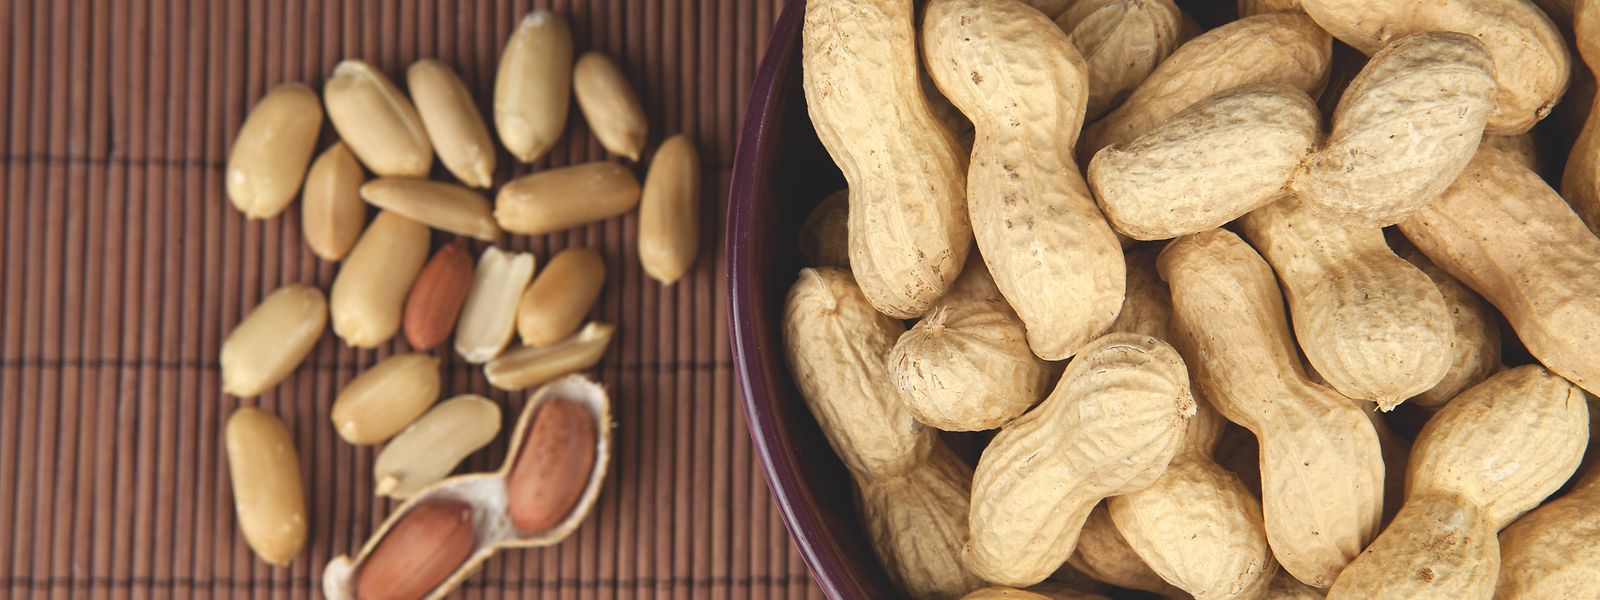 Im Rahmen der LIH-Studie wurden den Teilnehmern unter ärztlicher Aufsicht Erdnüsse verabreicht. 